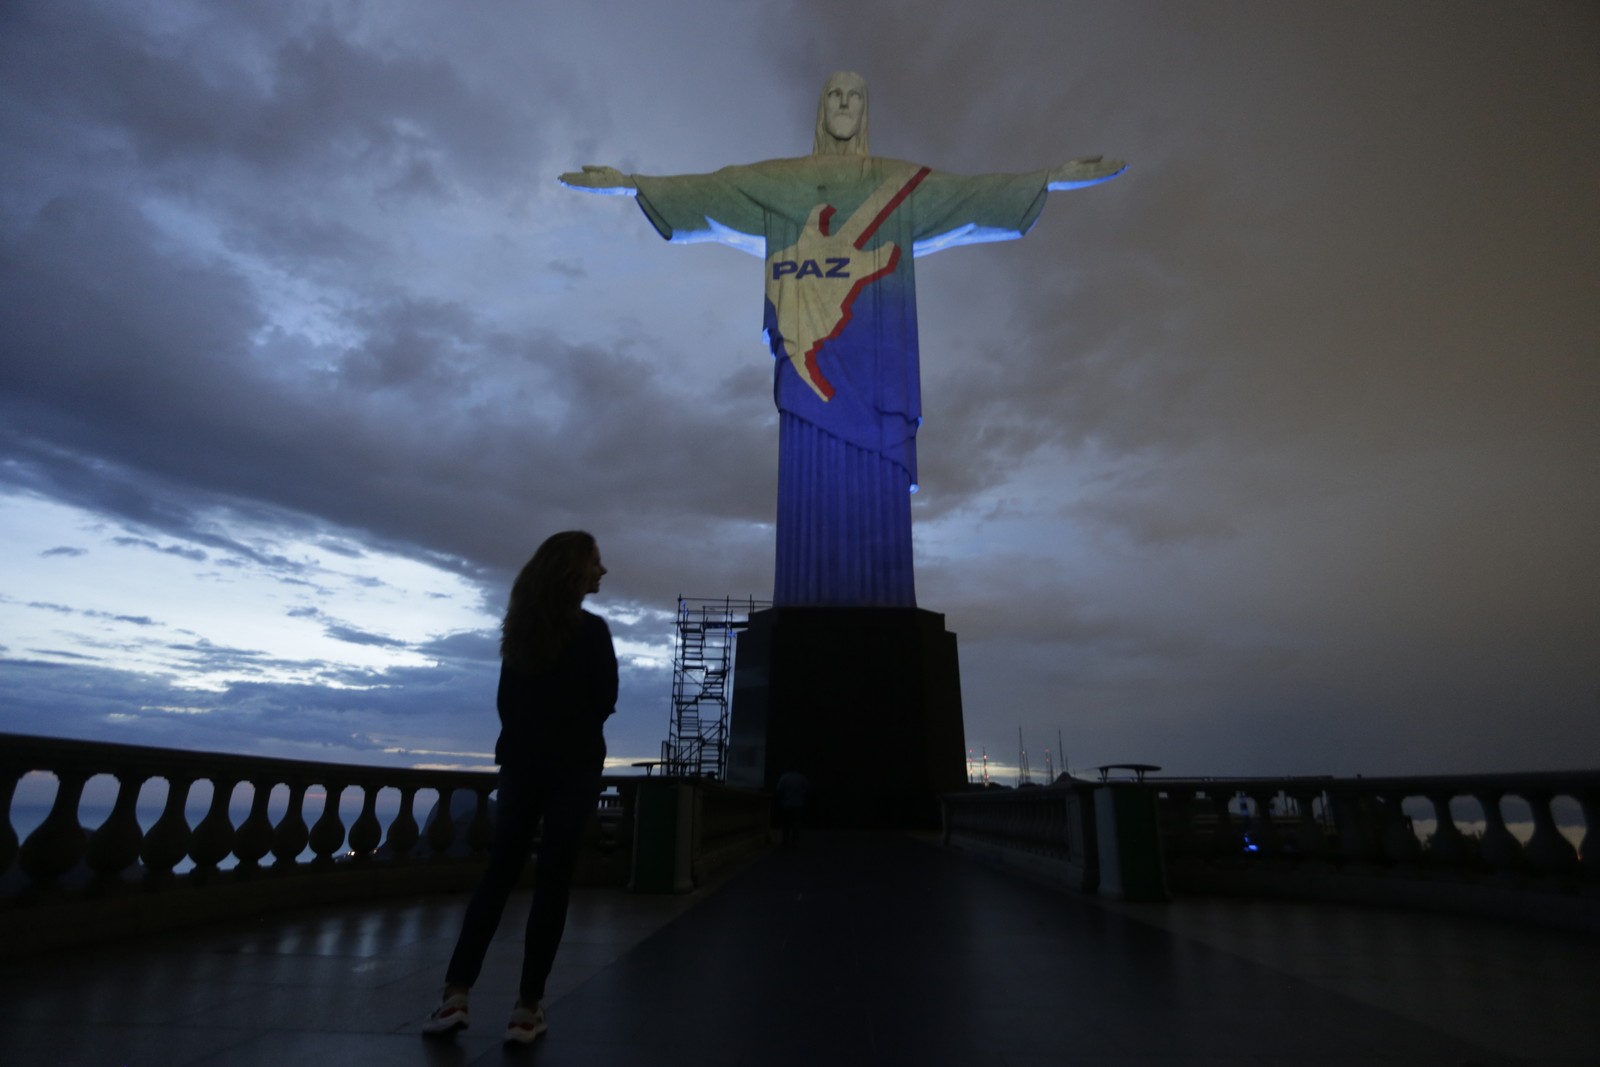 Cristo Redentor recebe projeção de imagens em homenagem aos 40 anos do Rock in Rio — Foto: Domingos Peixoto / Agência O Globo